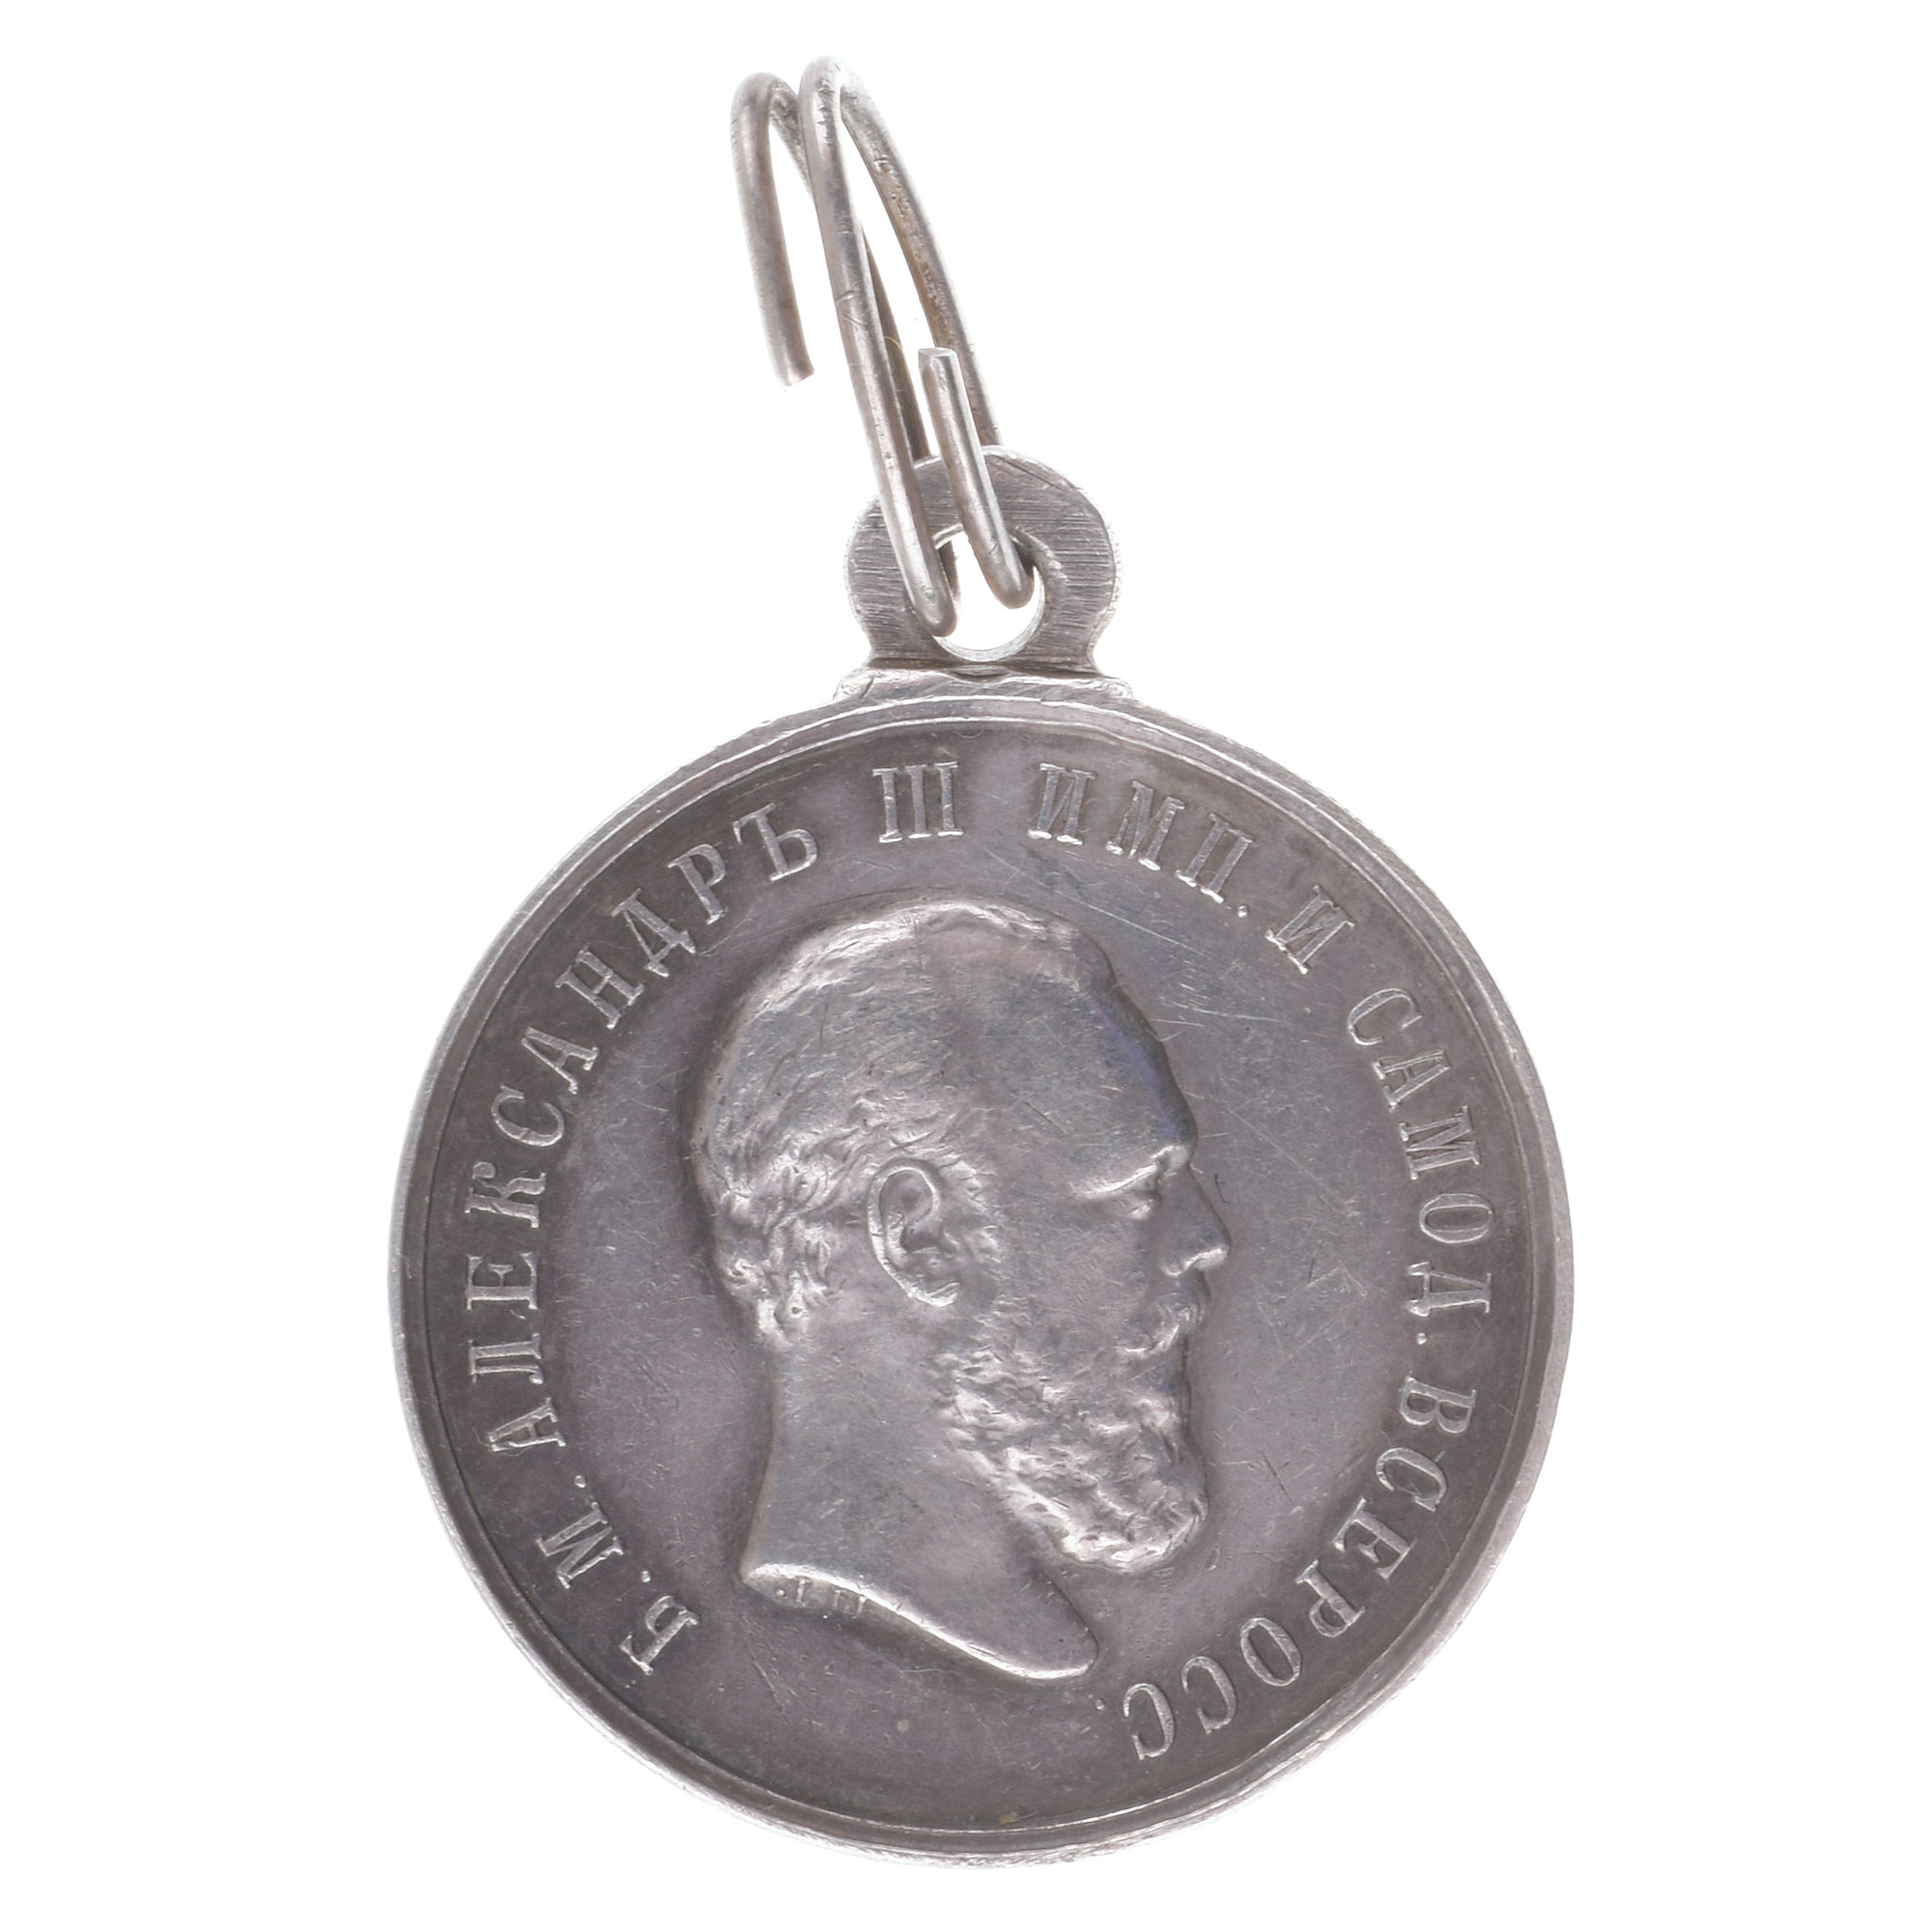 Медаль "За Усердие" с портретом Императора Александра III. В обрезе шеи "Л.Ш."